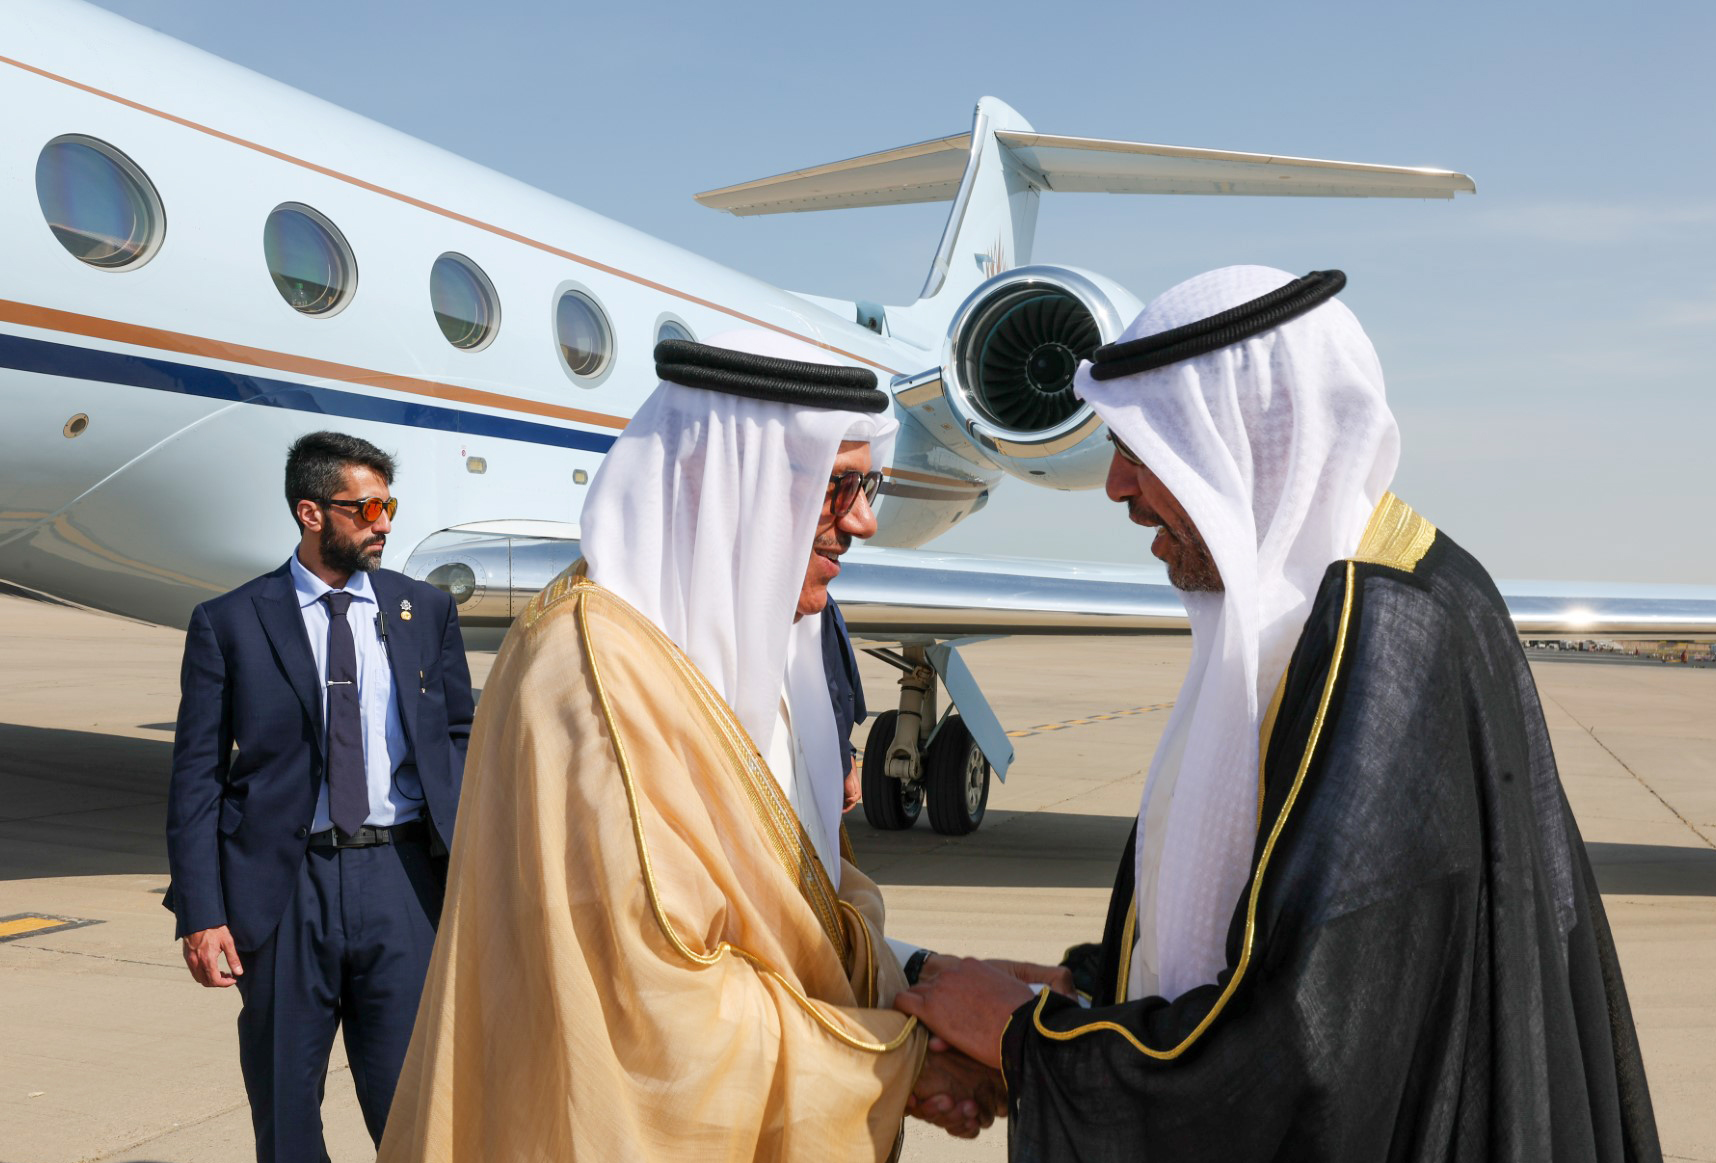 وزير الخارجية عبدالله اليحيا يستقبل وزير خارجية مملكة البحرين الشقيقة الدكتور عبداللطيف الزياني